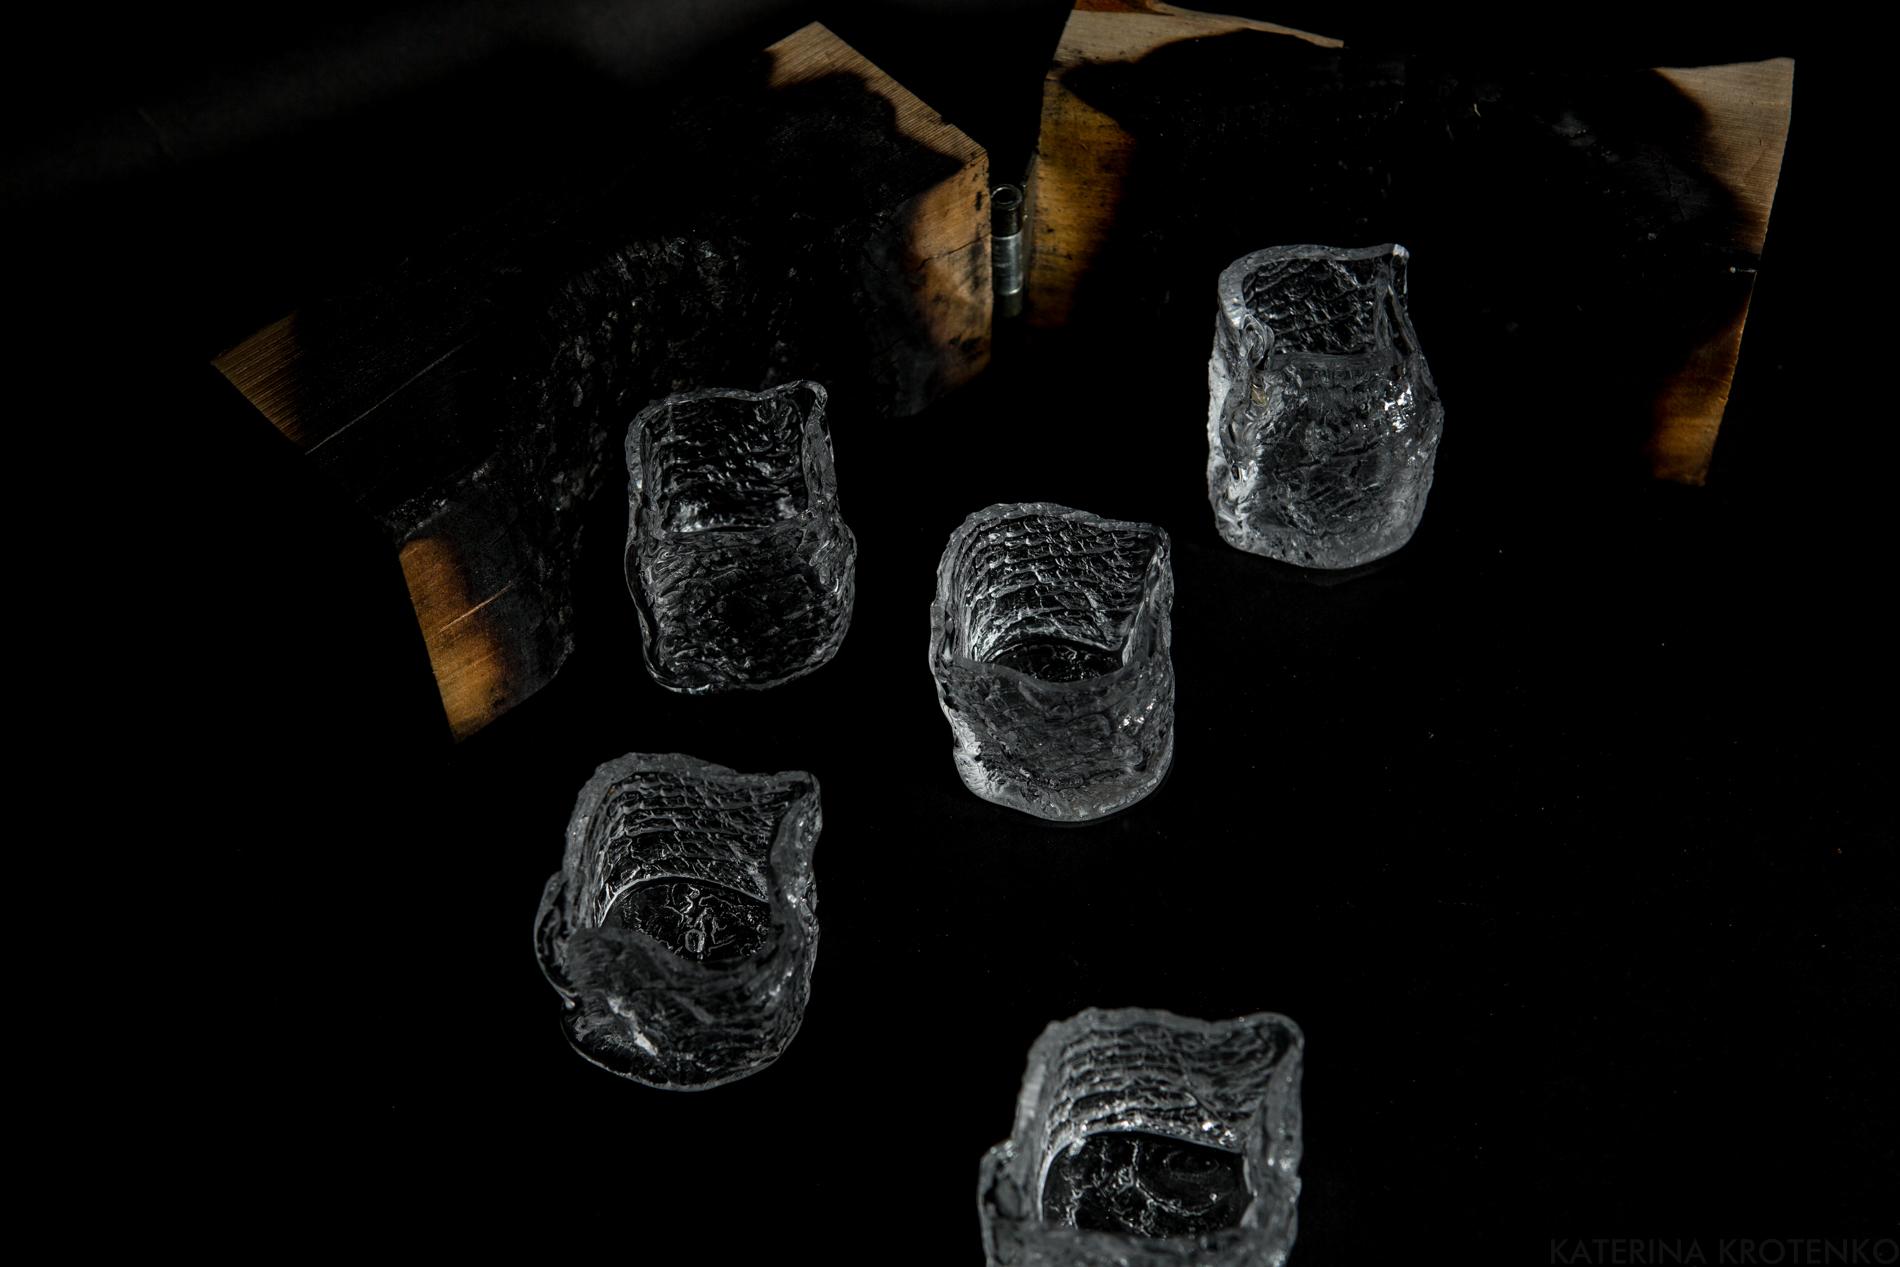 récipients miniatures en verre avec texture en bois, volume VII, édition limitée à 12 pièces uniques
Dimensions approximatives : 5-6 cm / 75-100 ml

Ces petites sculptures en verre peuvent être utilisées comme vases pour les fleurs sauvages ou comme